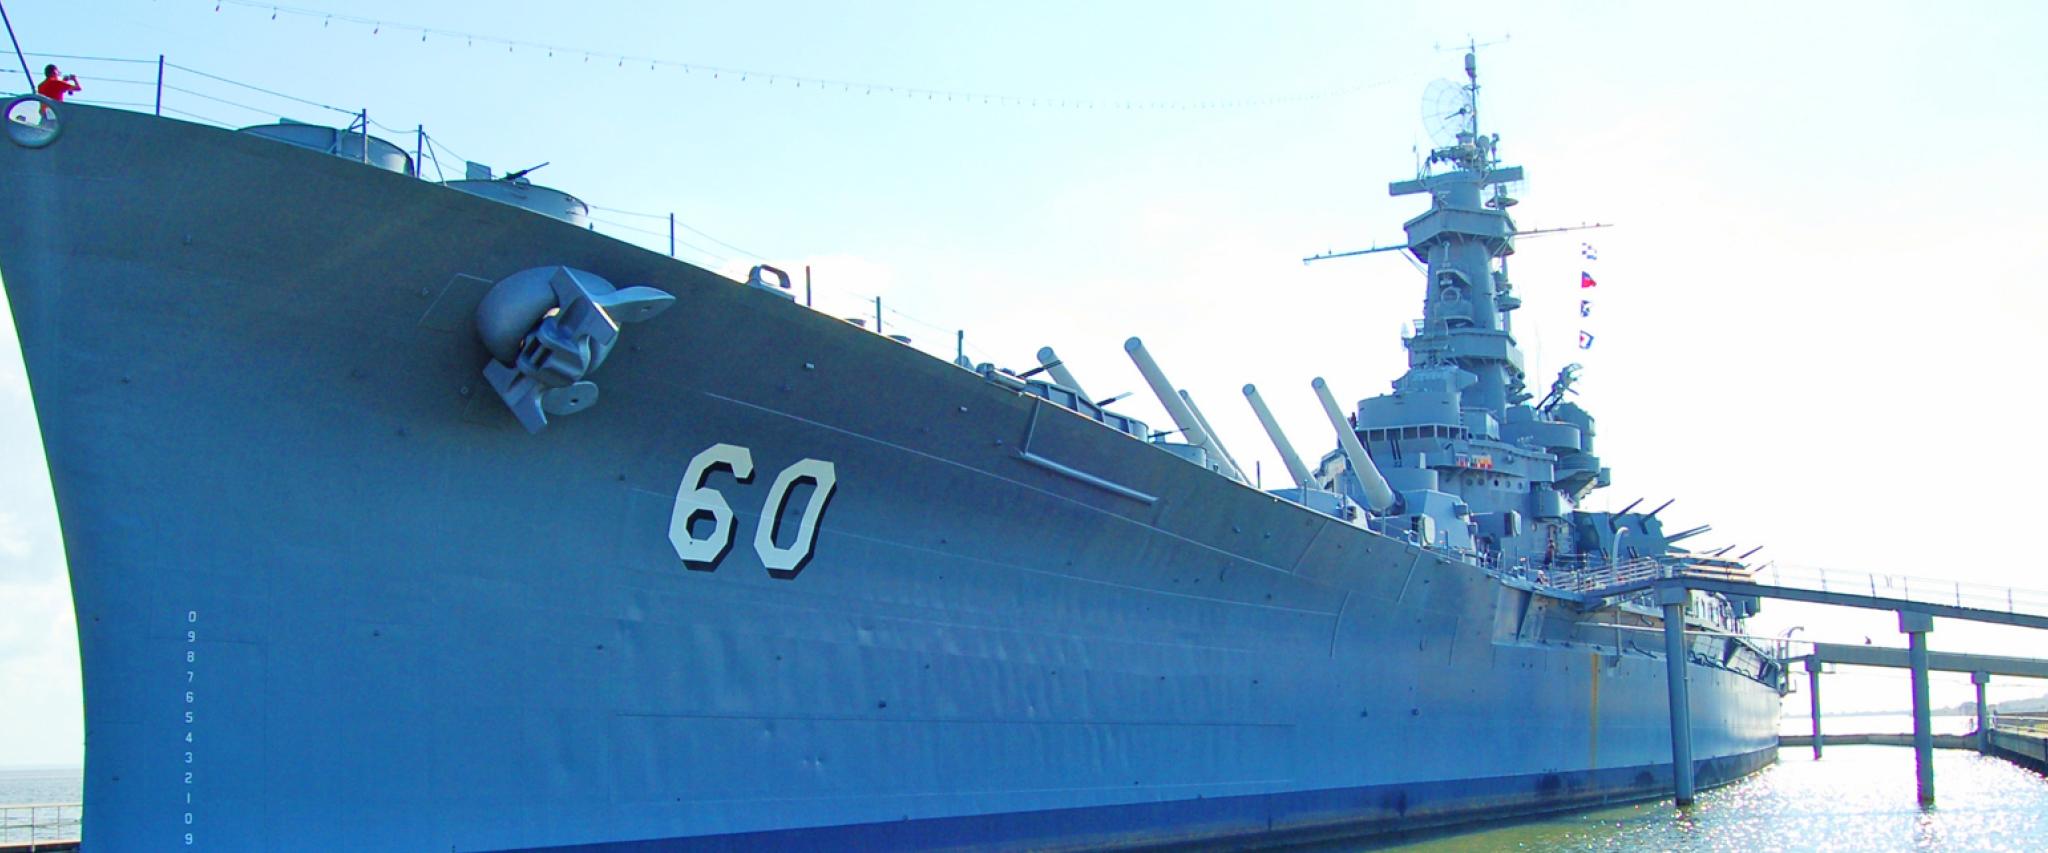 USS Alabama Battleship